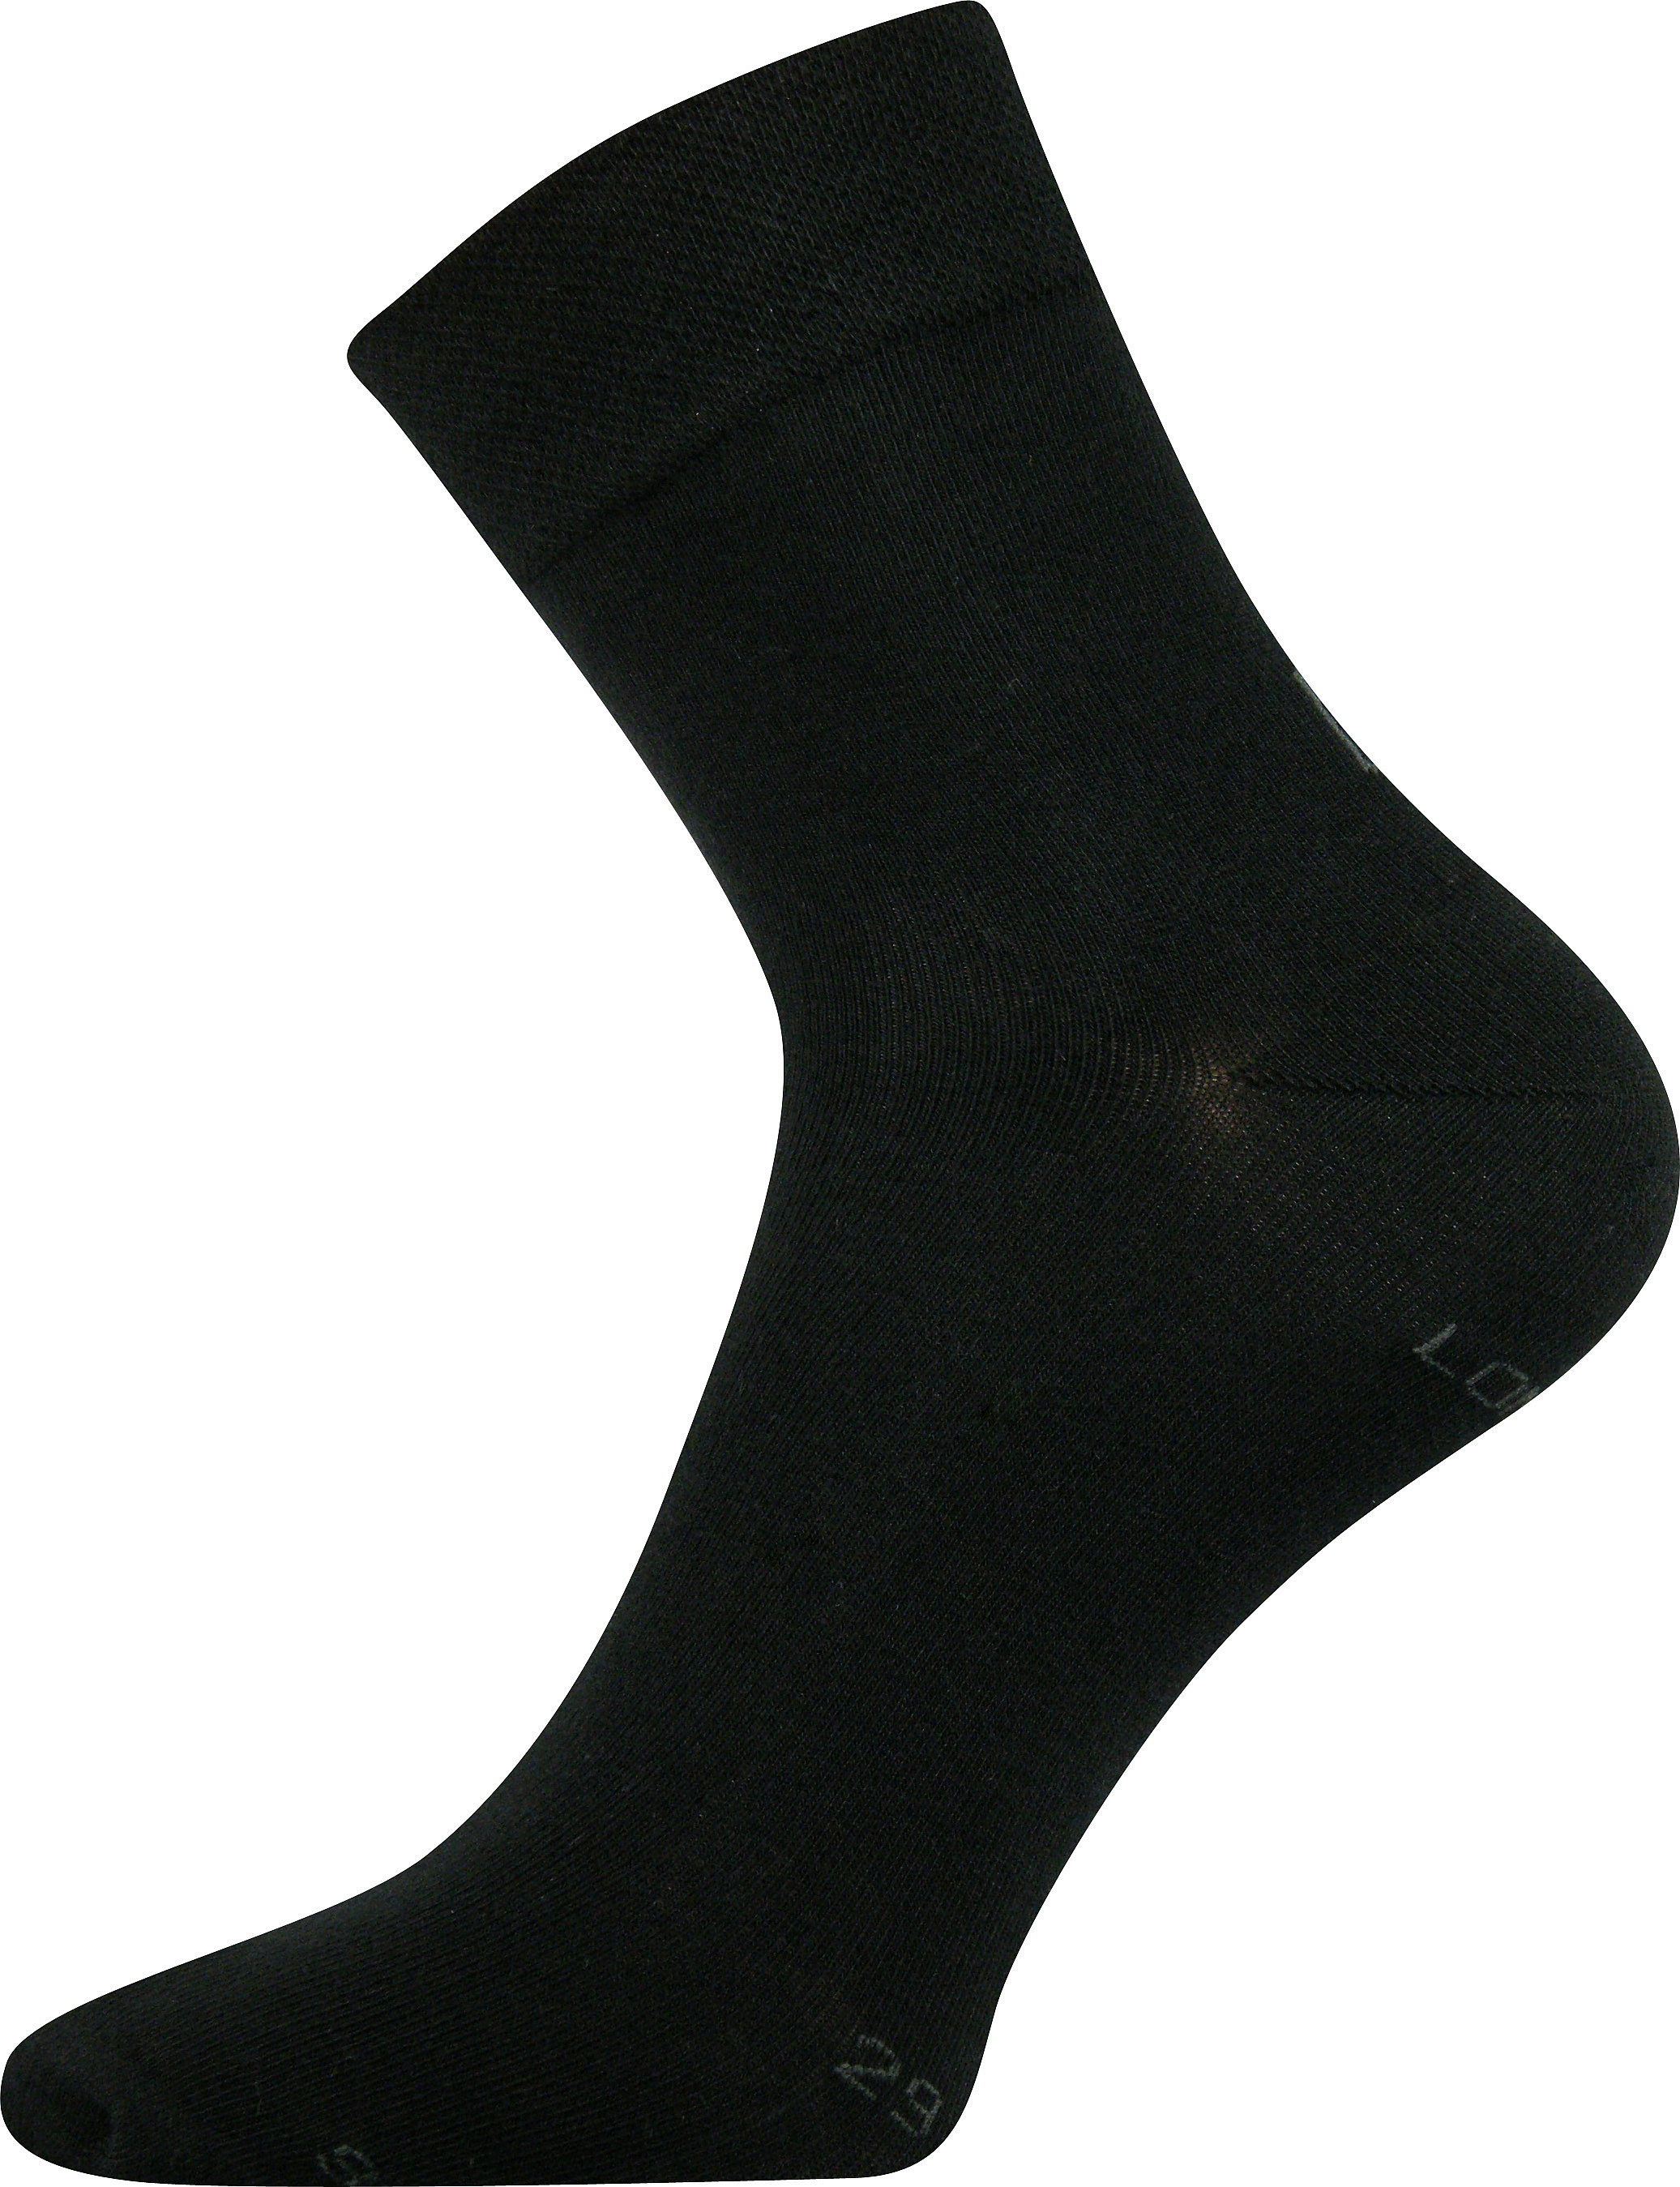 Ponožky společenské Lonka Haner - černé, 39-42